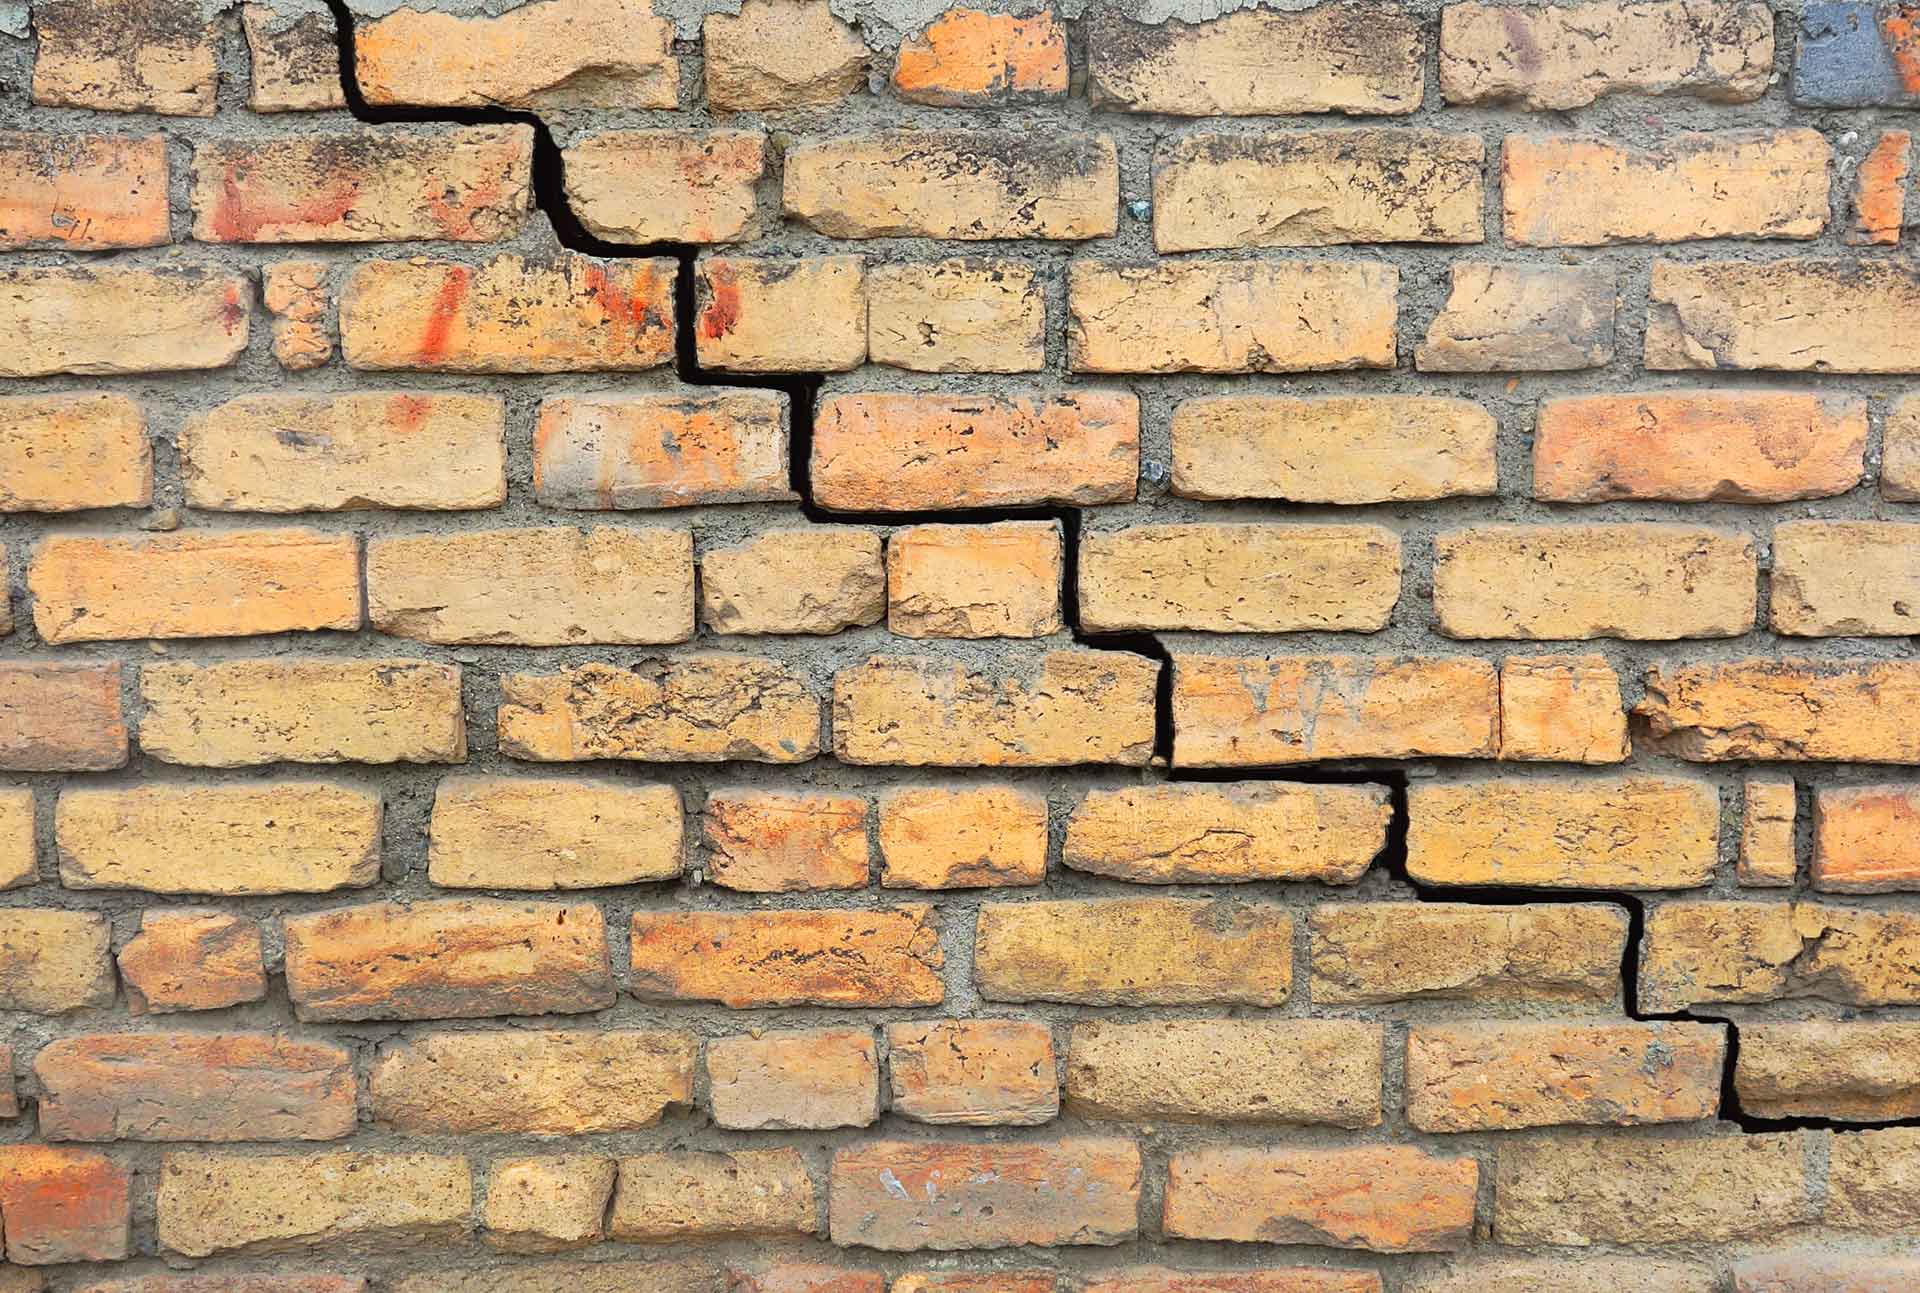 cracks in exterior brick